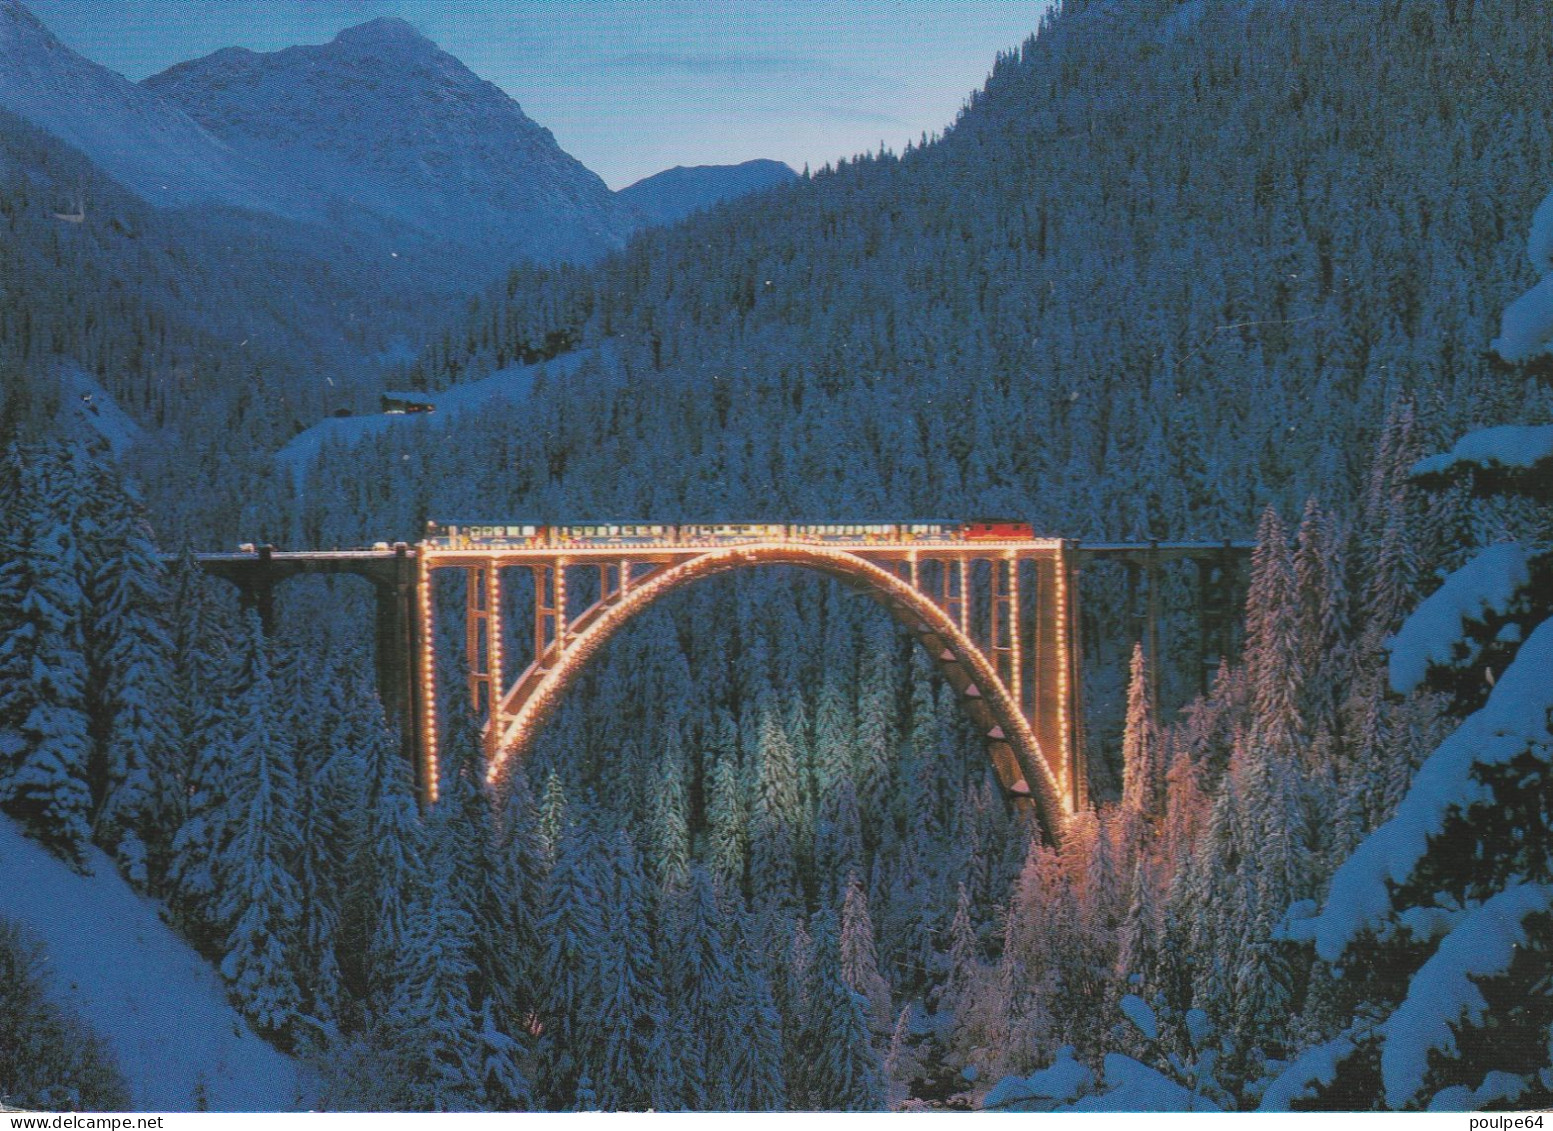 Chemin De Fer Suisse - Rame Arosa-Express Sur Le Viaduc - Opere D'Arte